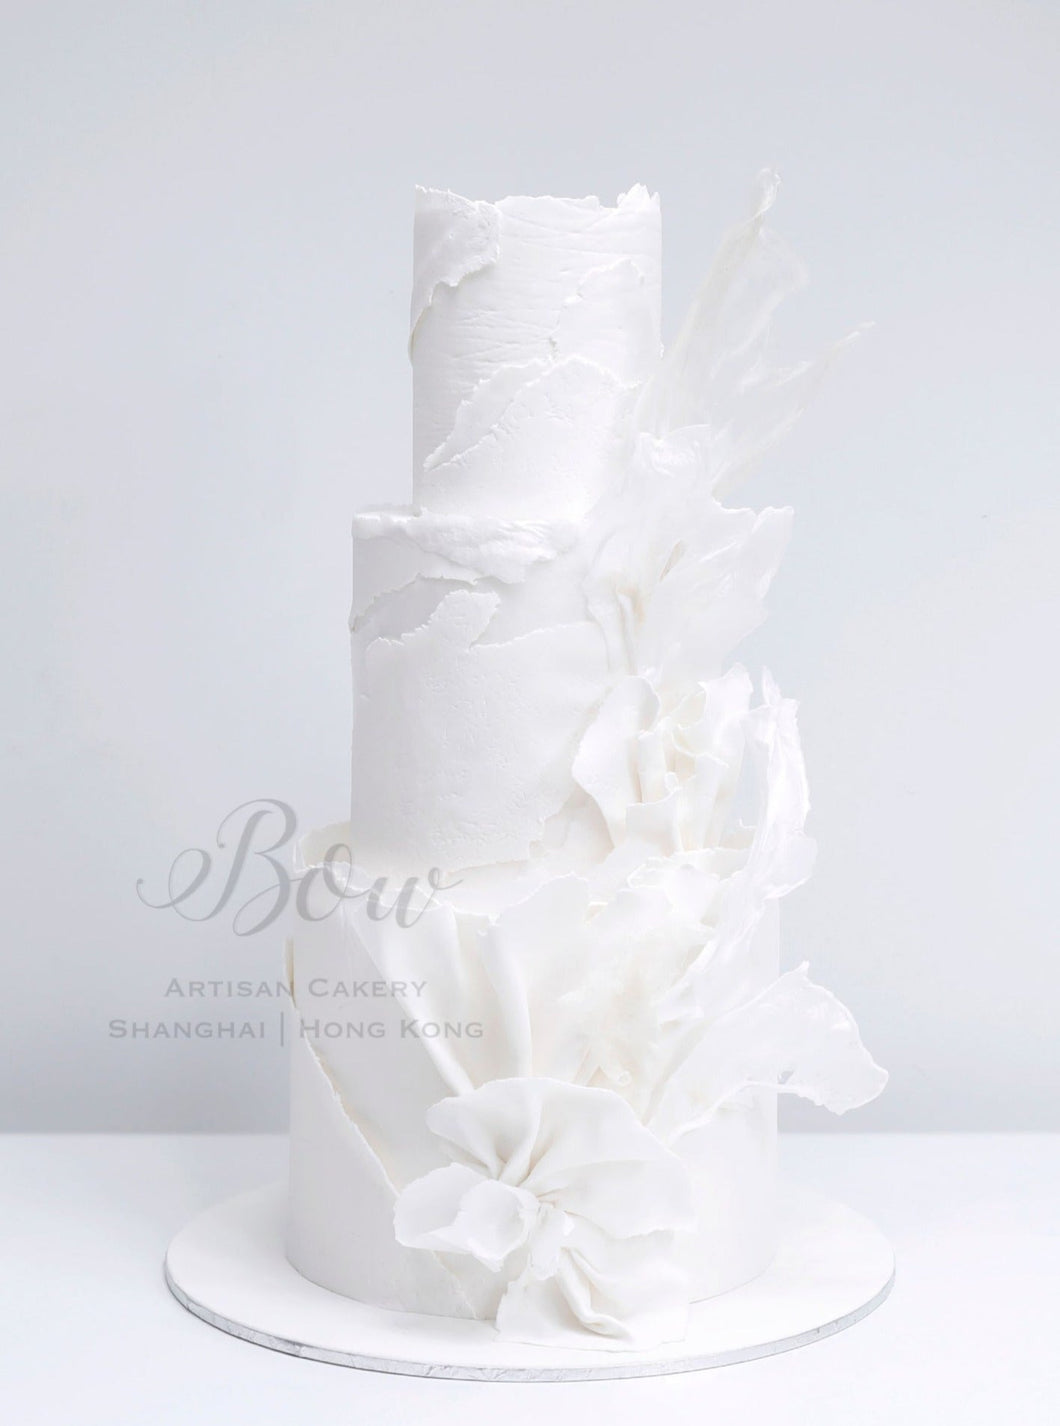 Shades of White | BOW Artisan Cakery | Wedding Display Cake Rental | Hong Kong